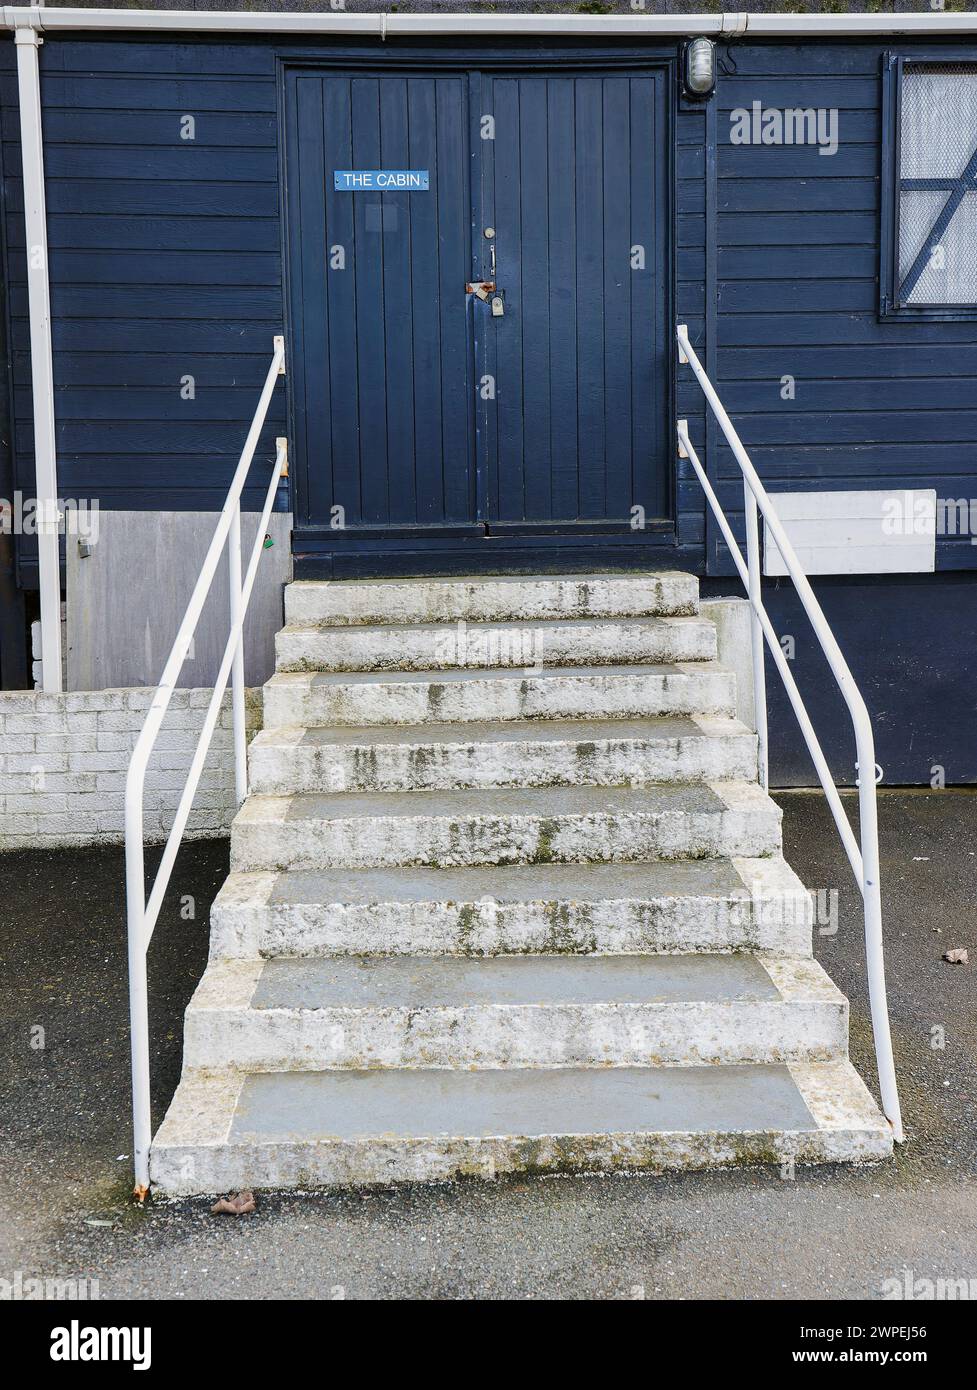 Gradini bianchi con corrimano che conducono alla cabina in legno dipinta di blu con doppia porta chiusa e cartello sulla porta che dice la cabina e la finestra sul lato della. Foto Stock